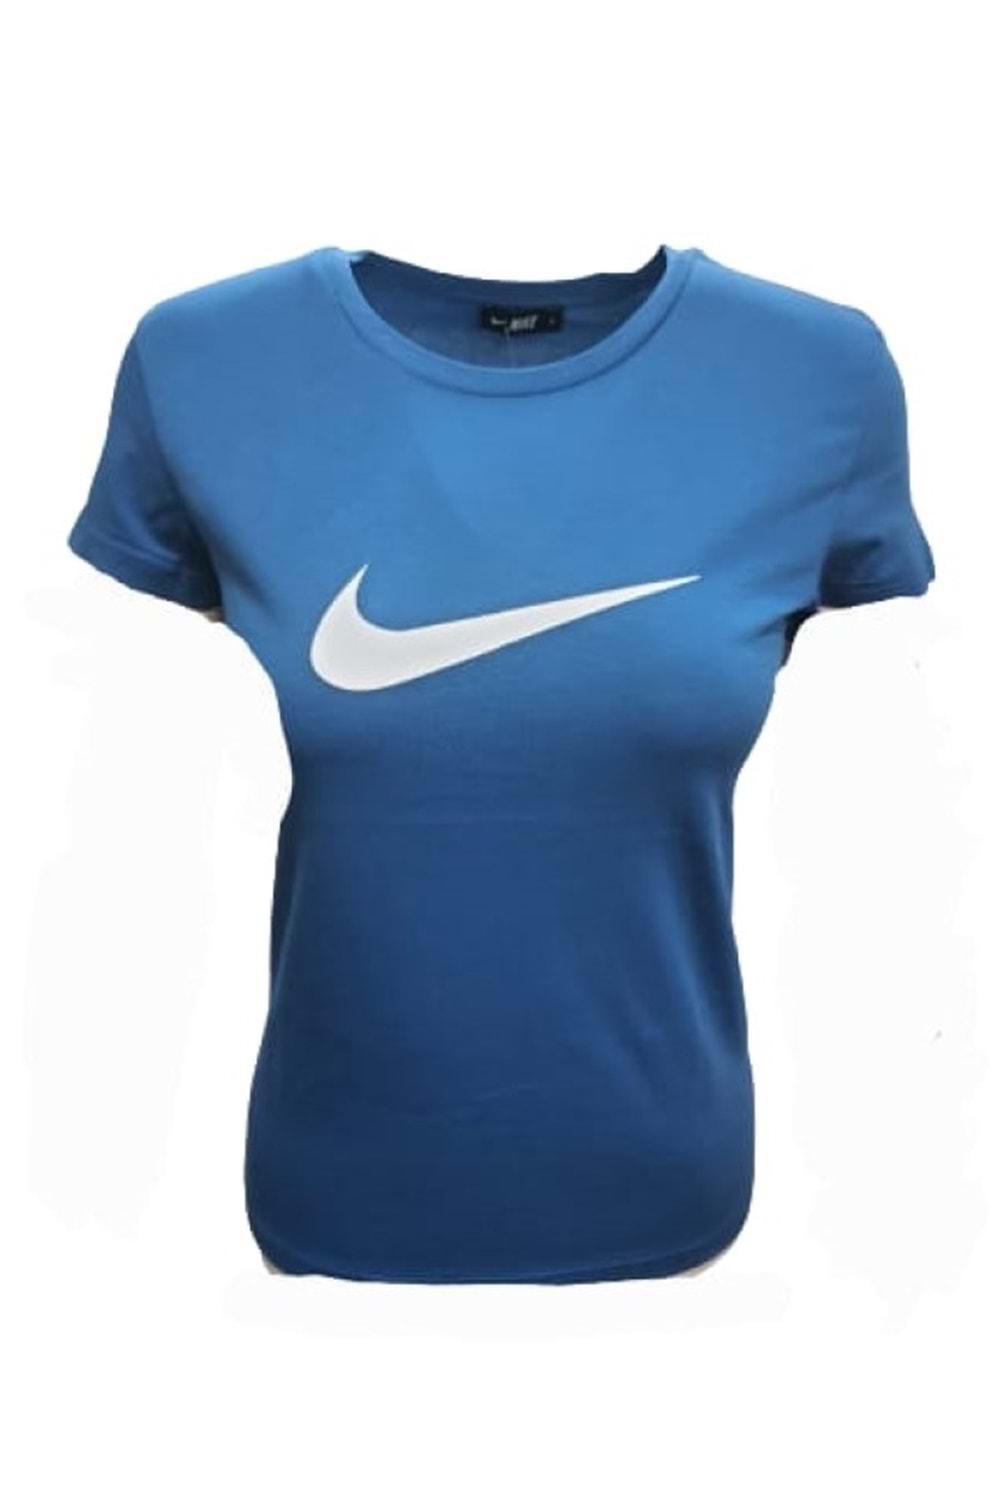 Nike Kadın Kısa Kol T-shirt 22503 - Mavi - S